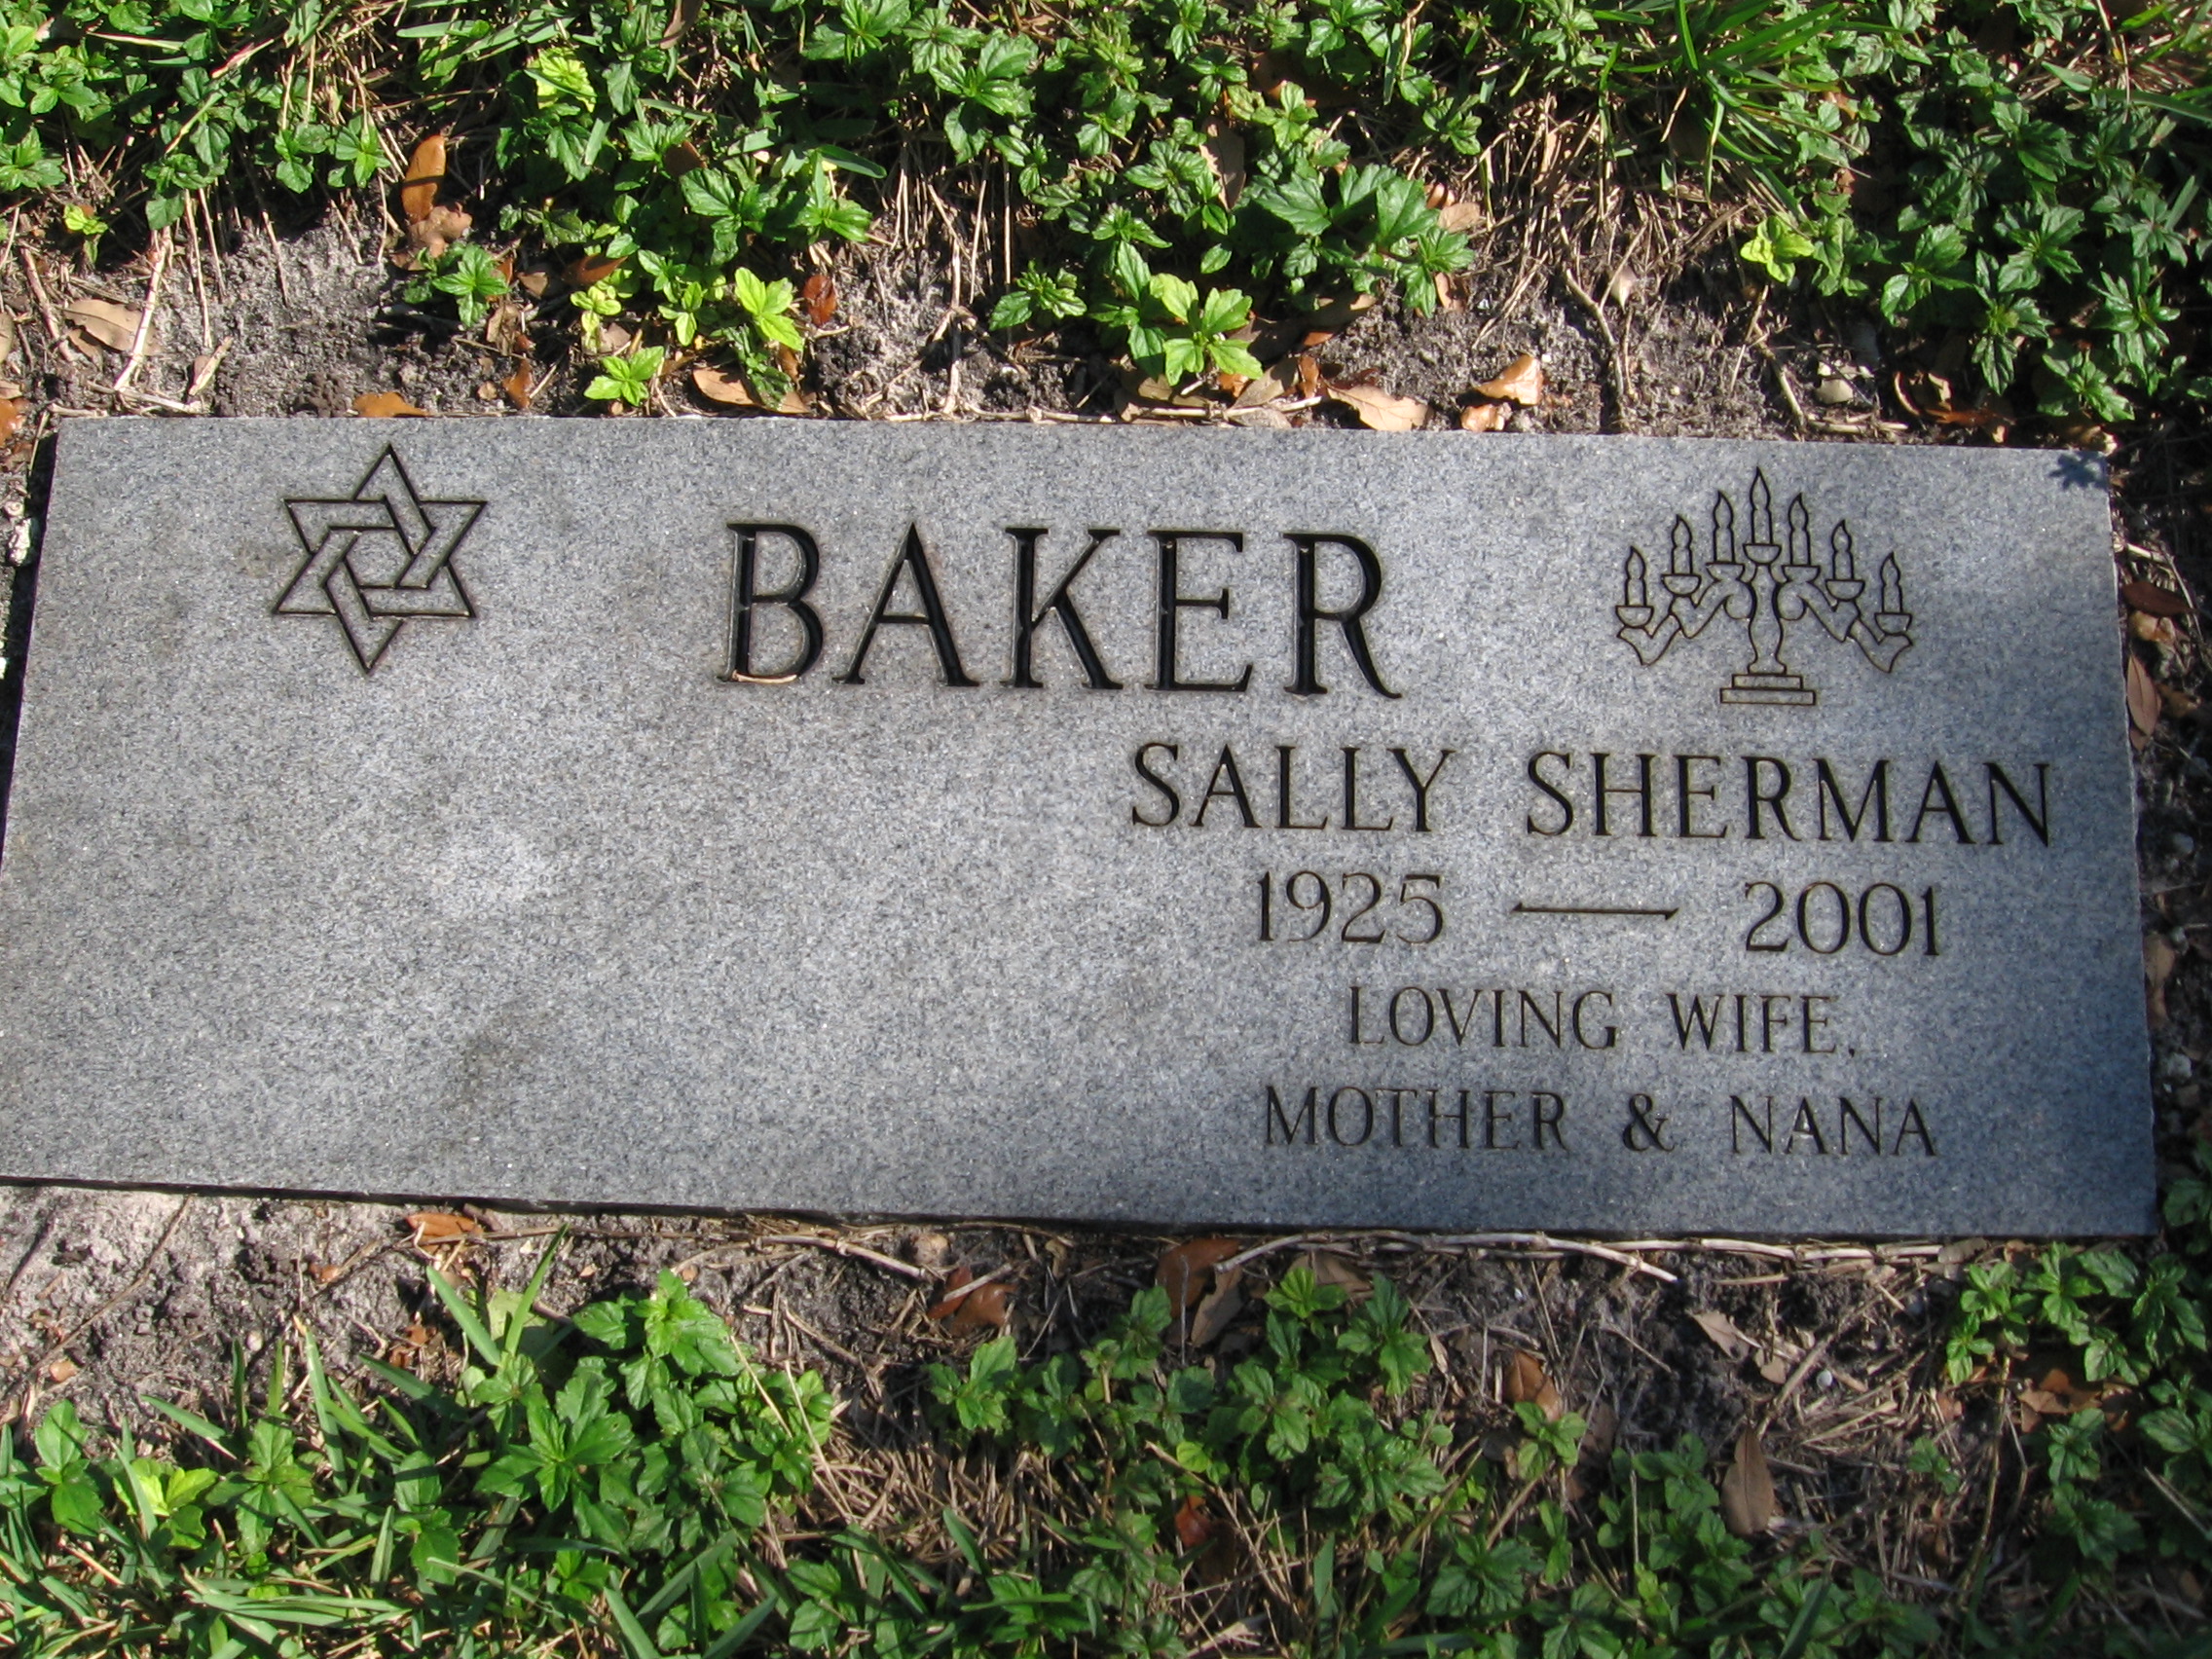 Sally Sherman Baker